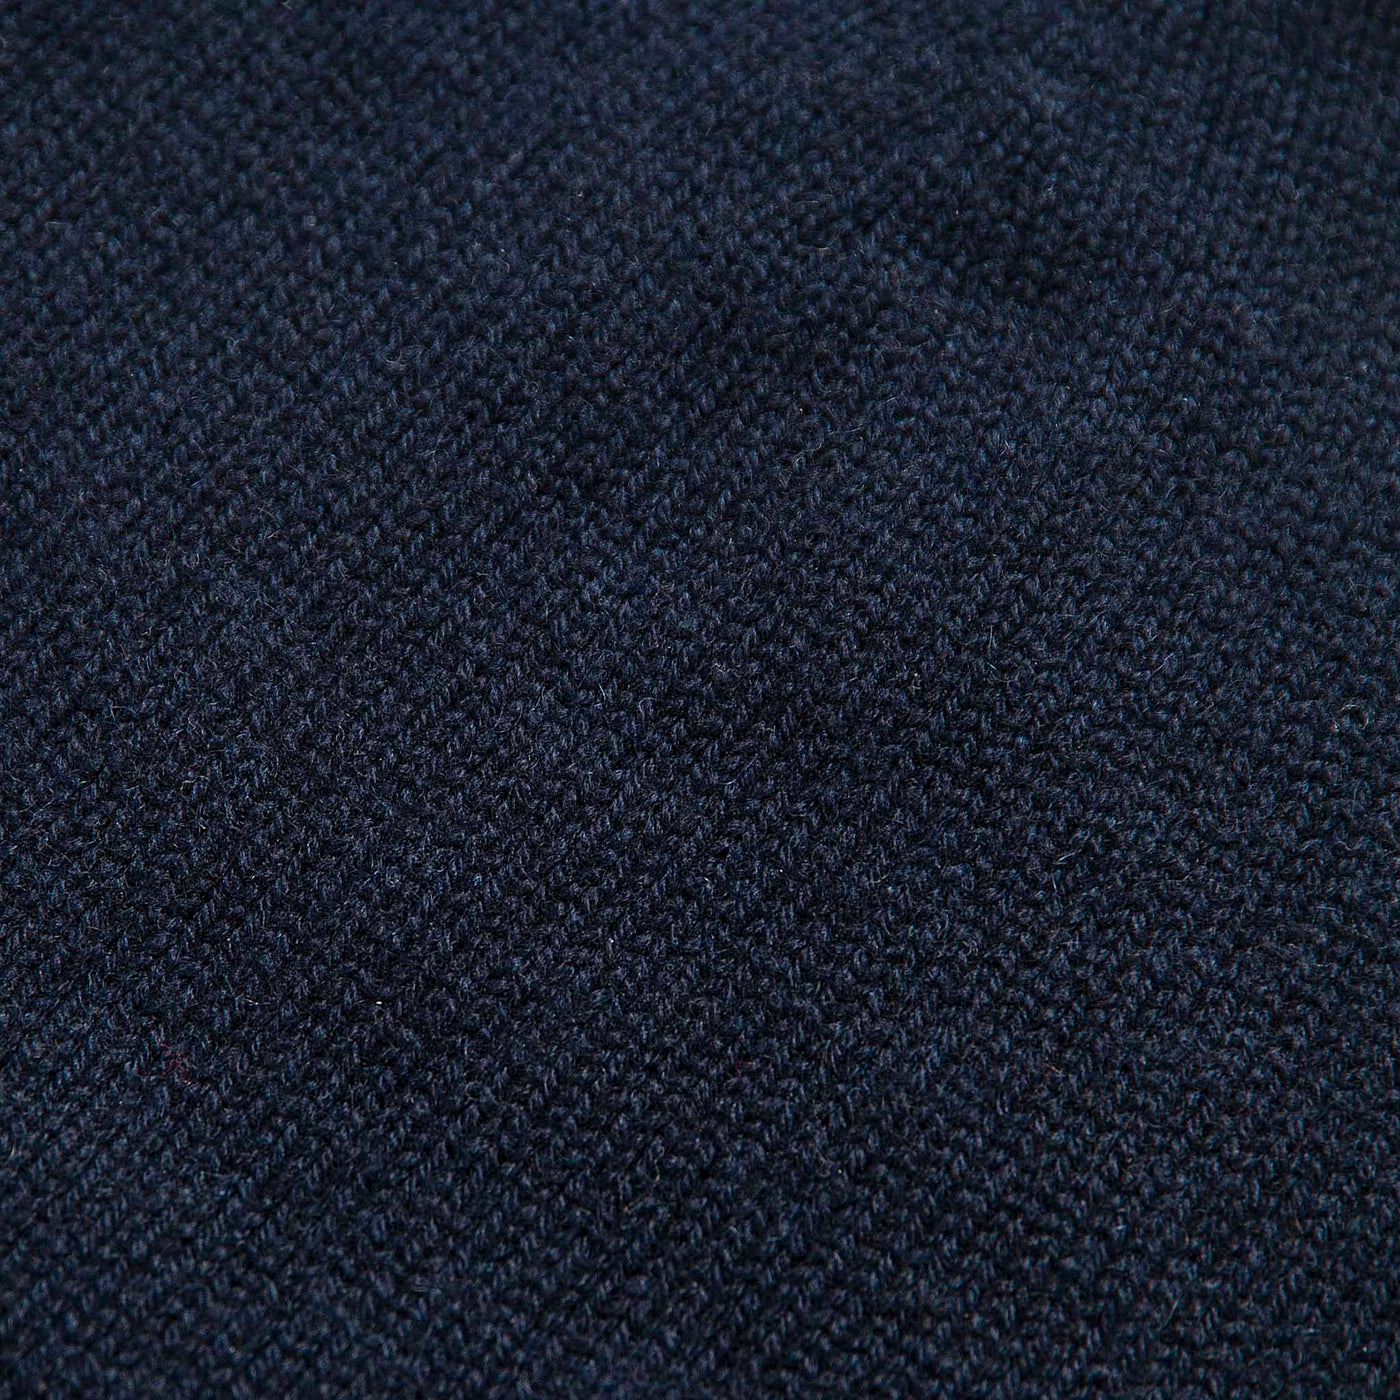 Leo Woollen beret 100% Cashmere (dark blue)